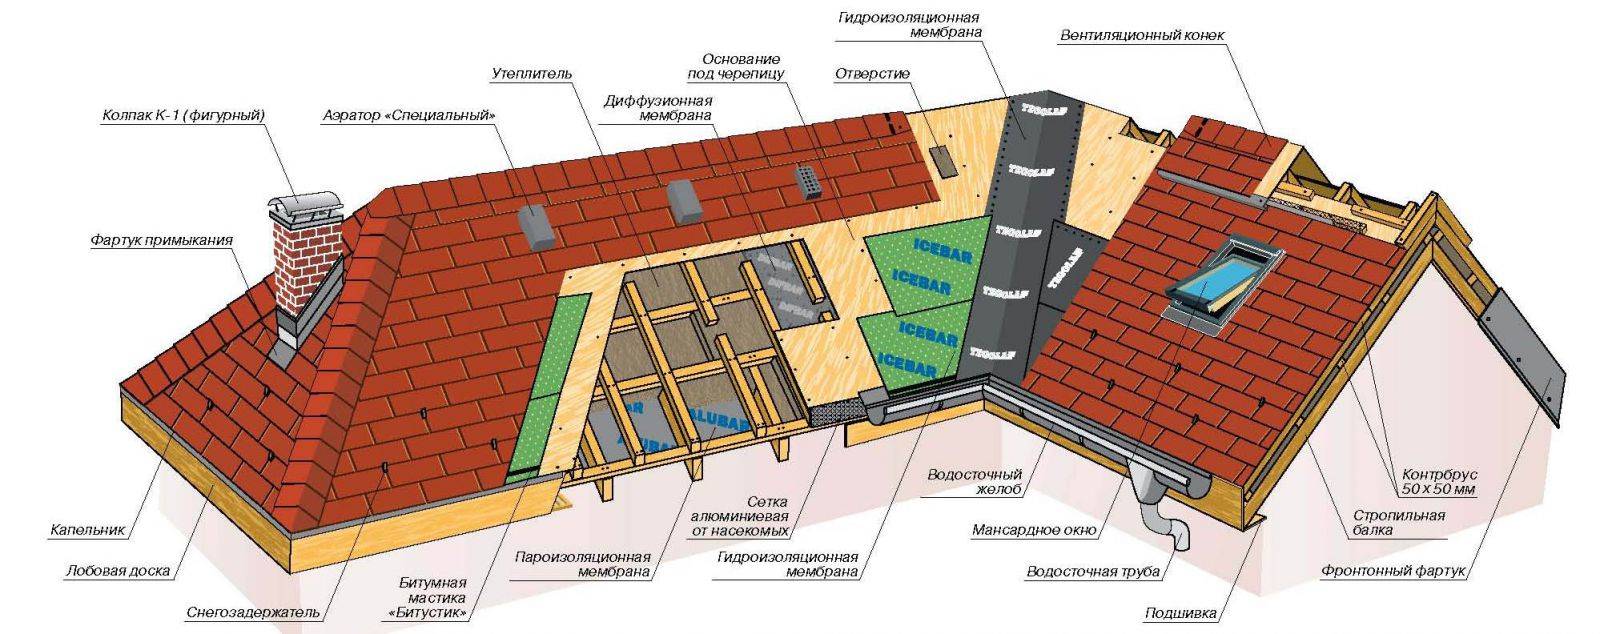 Плоская крыша: особенности устройства и монтажа